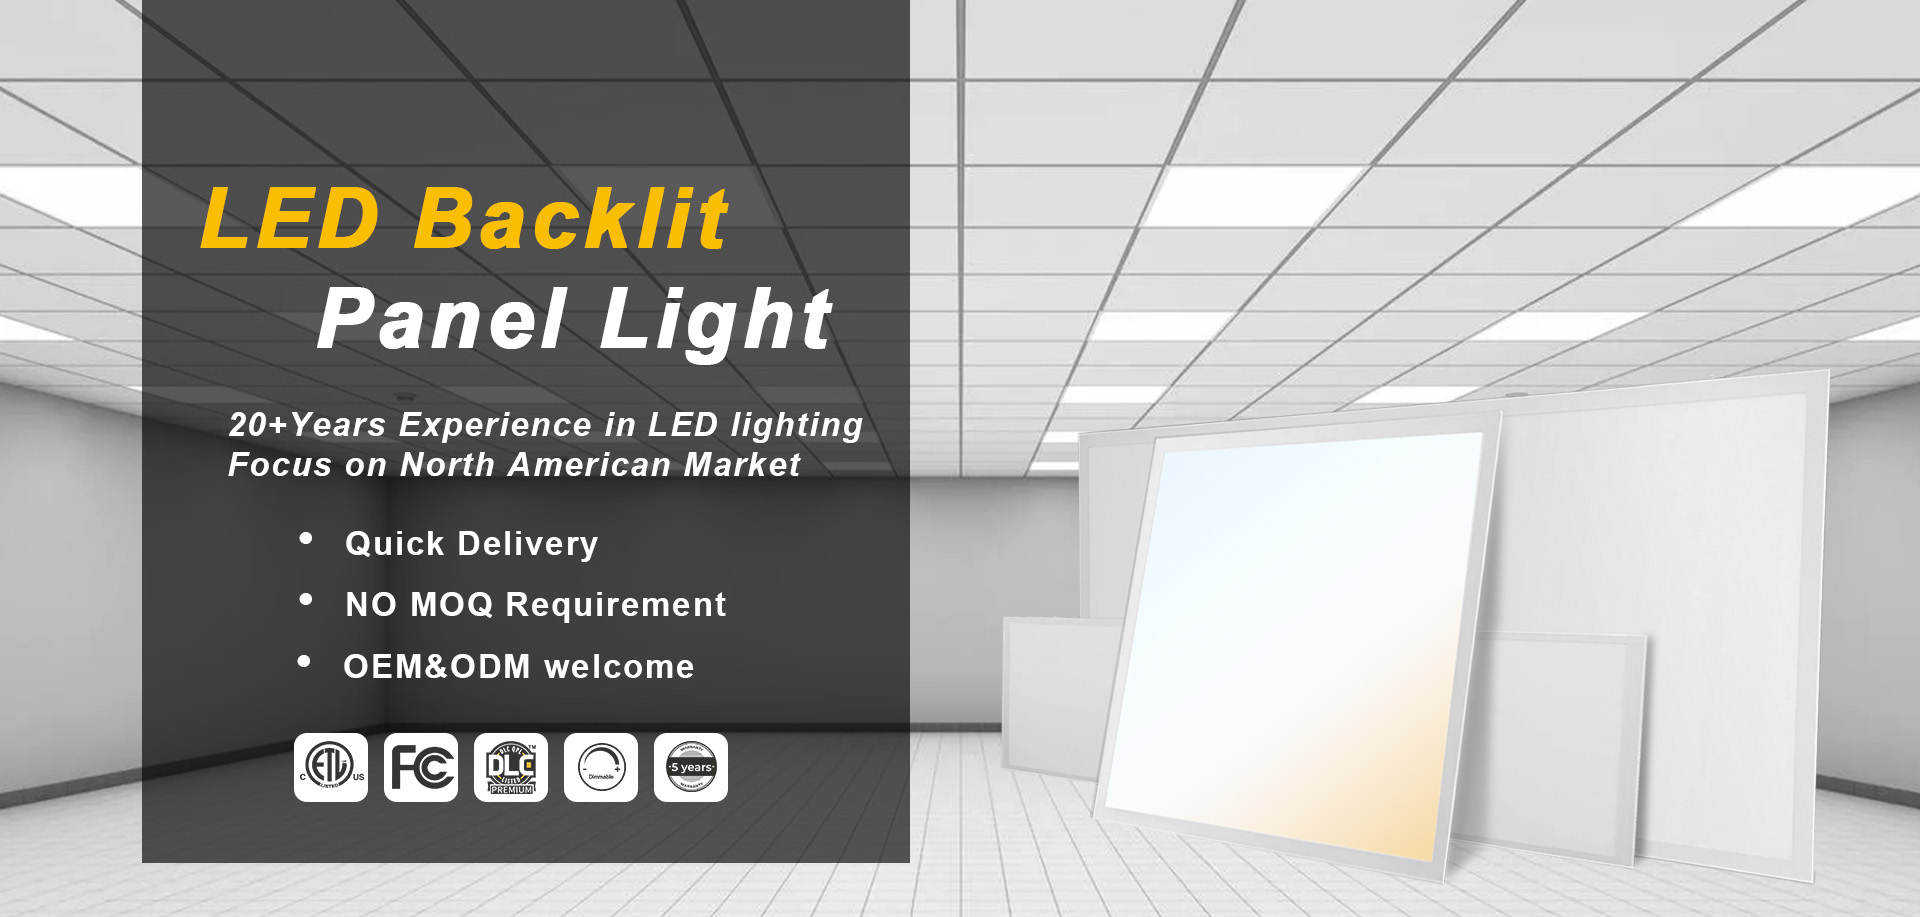 LED Backlit Panel Light